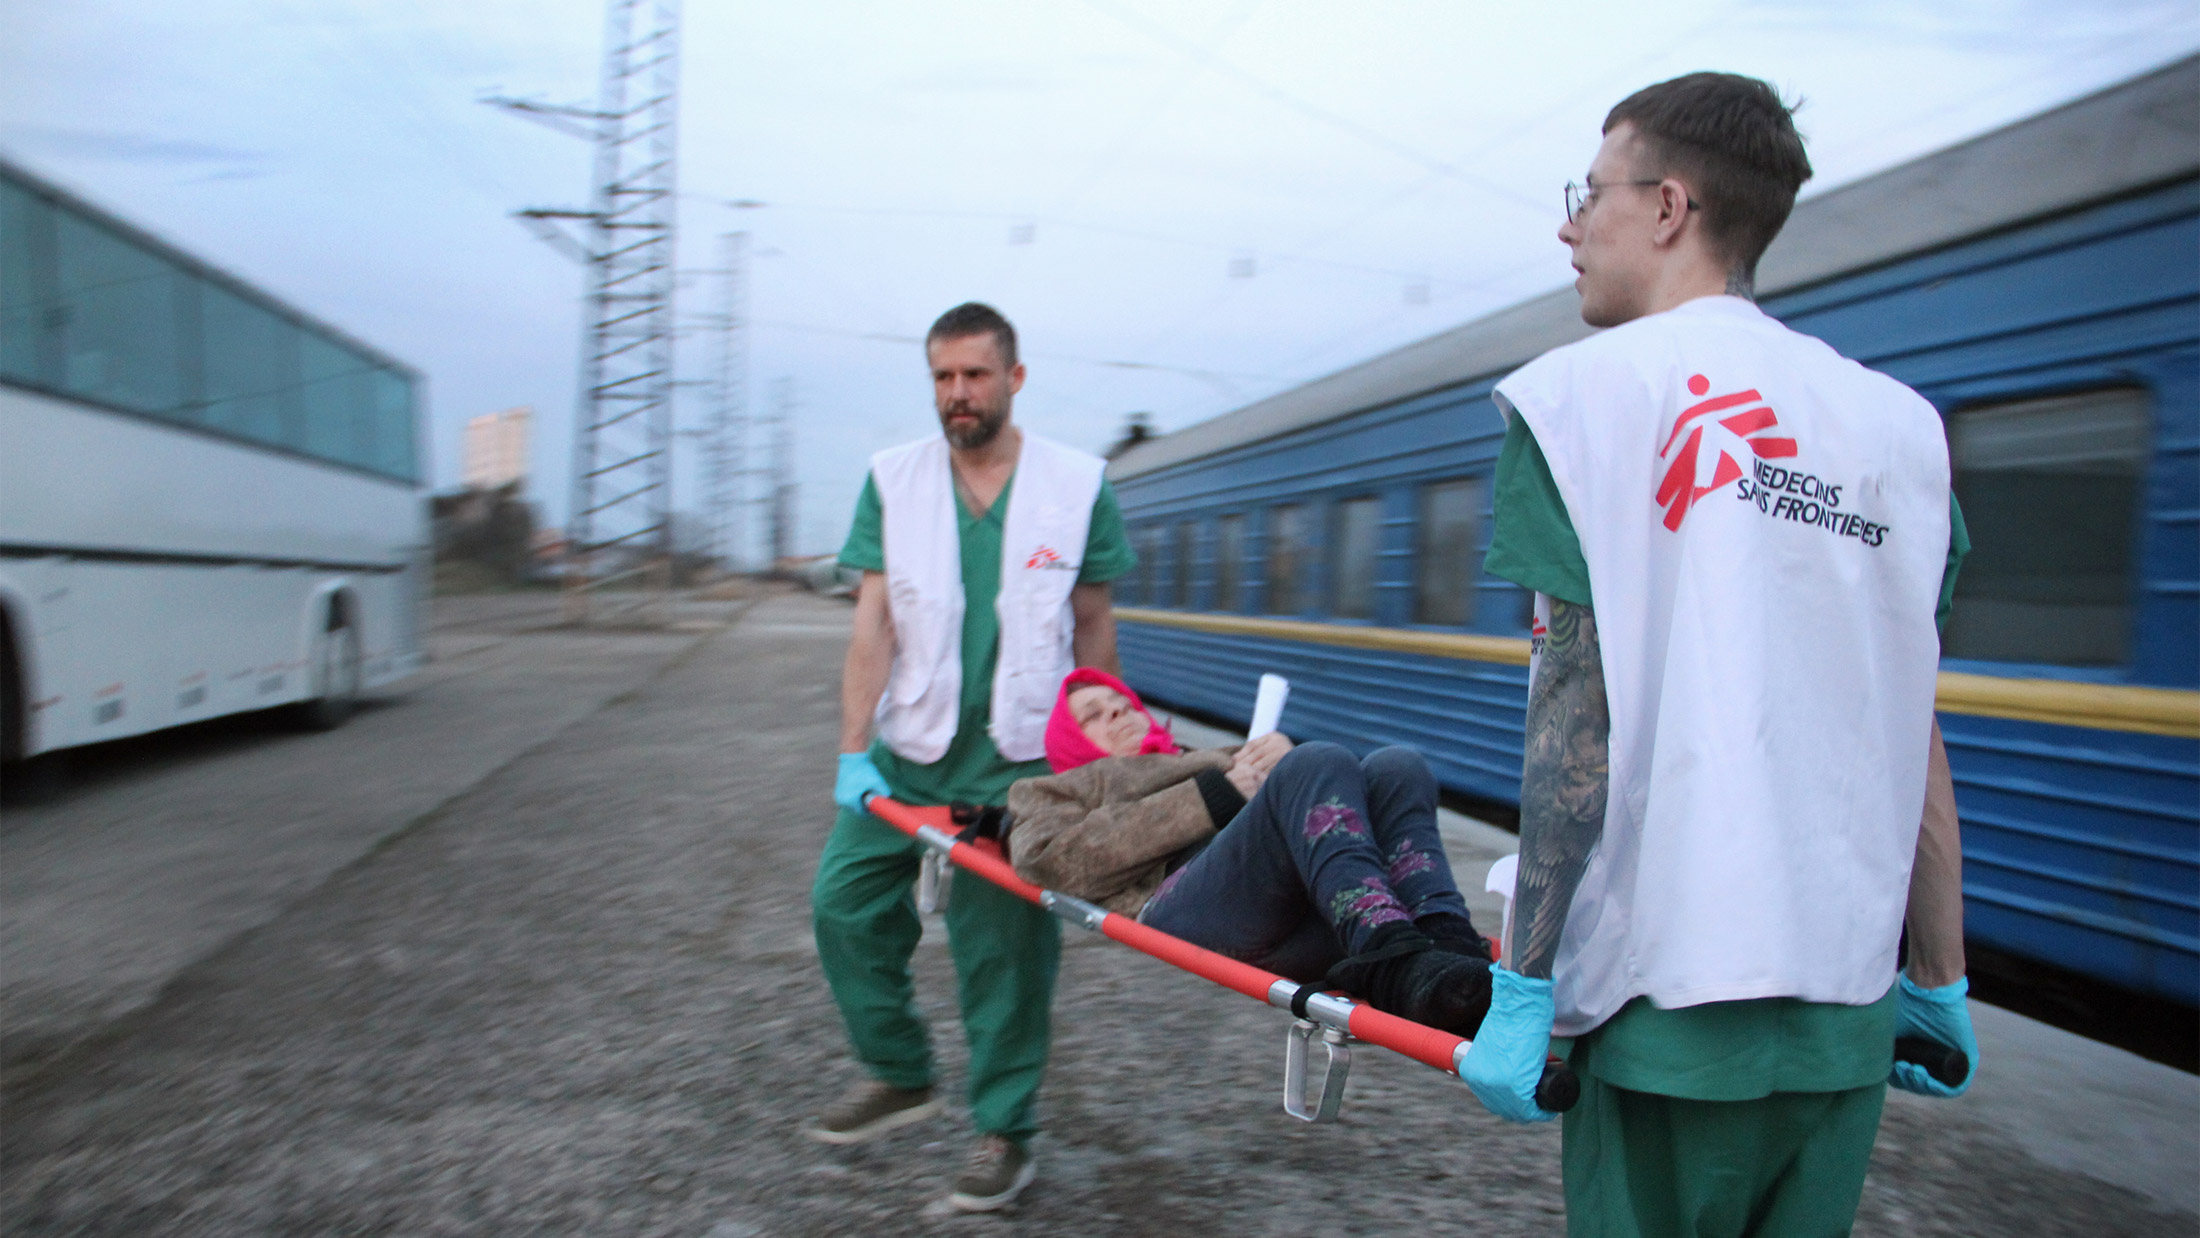 Zug/Zagreb: Zuger nach Explosion wegen Duftspray im Spital - 20 Minuten